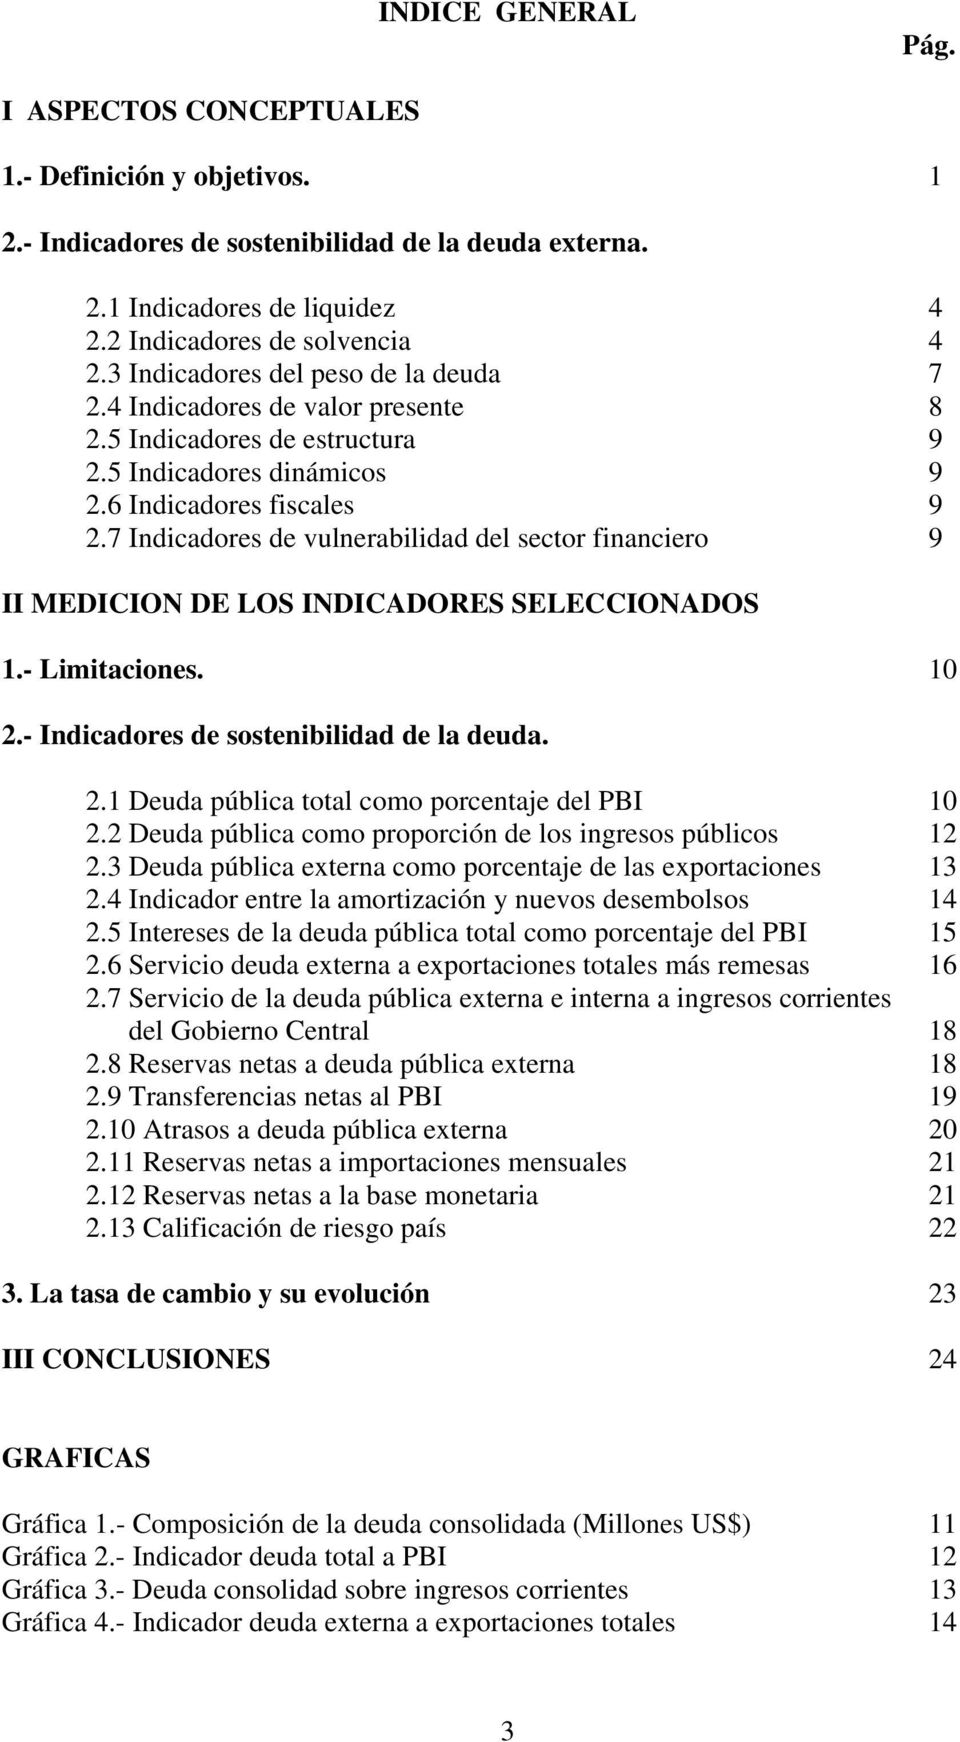 7 Indicadores de vulnerabilidad del sector financiero 9 II MEDICION DE LOS INDICADORES SELECCIONADOS 1.- Limitaciones. 10 2.- Indicadores de sostenibilidad de la deuda. 2.1 Deuda pública total como porcentaje del PBI 10 2.